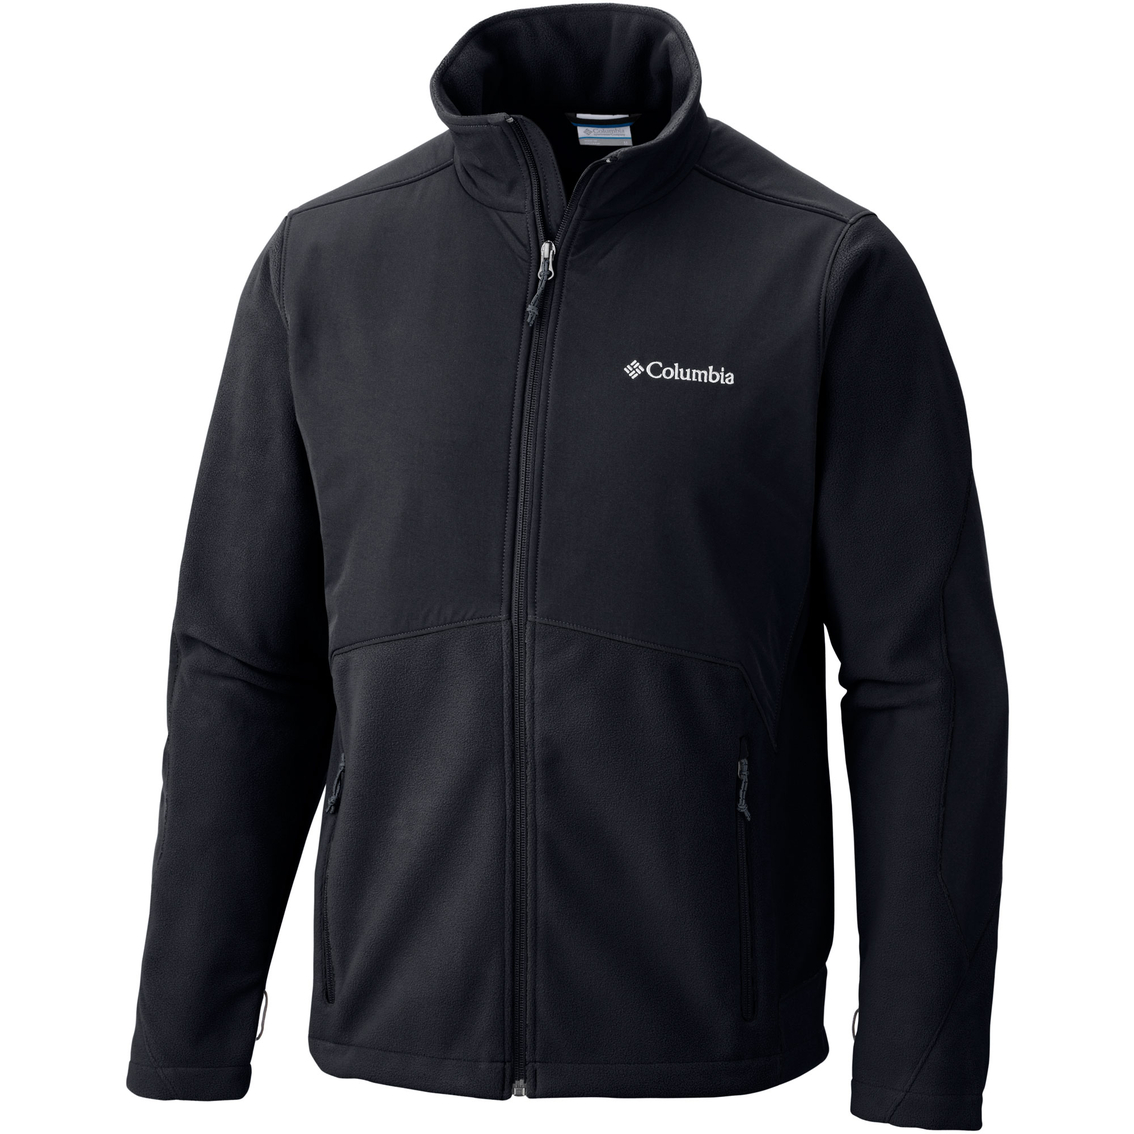 Columbia Ballistic Iii Fleece Jacket | Jackets | Clothing & Accessories ...